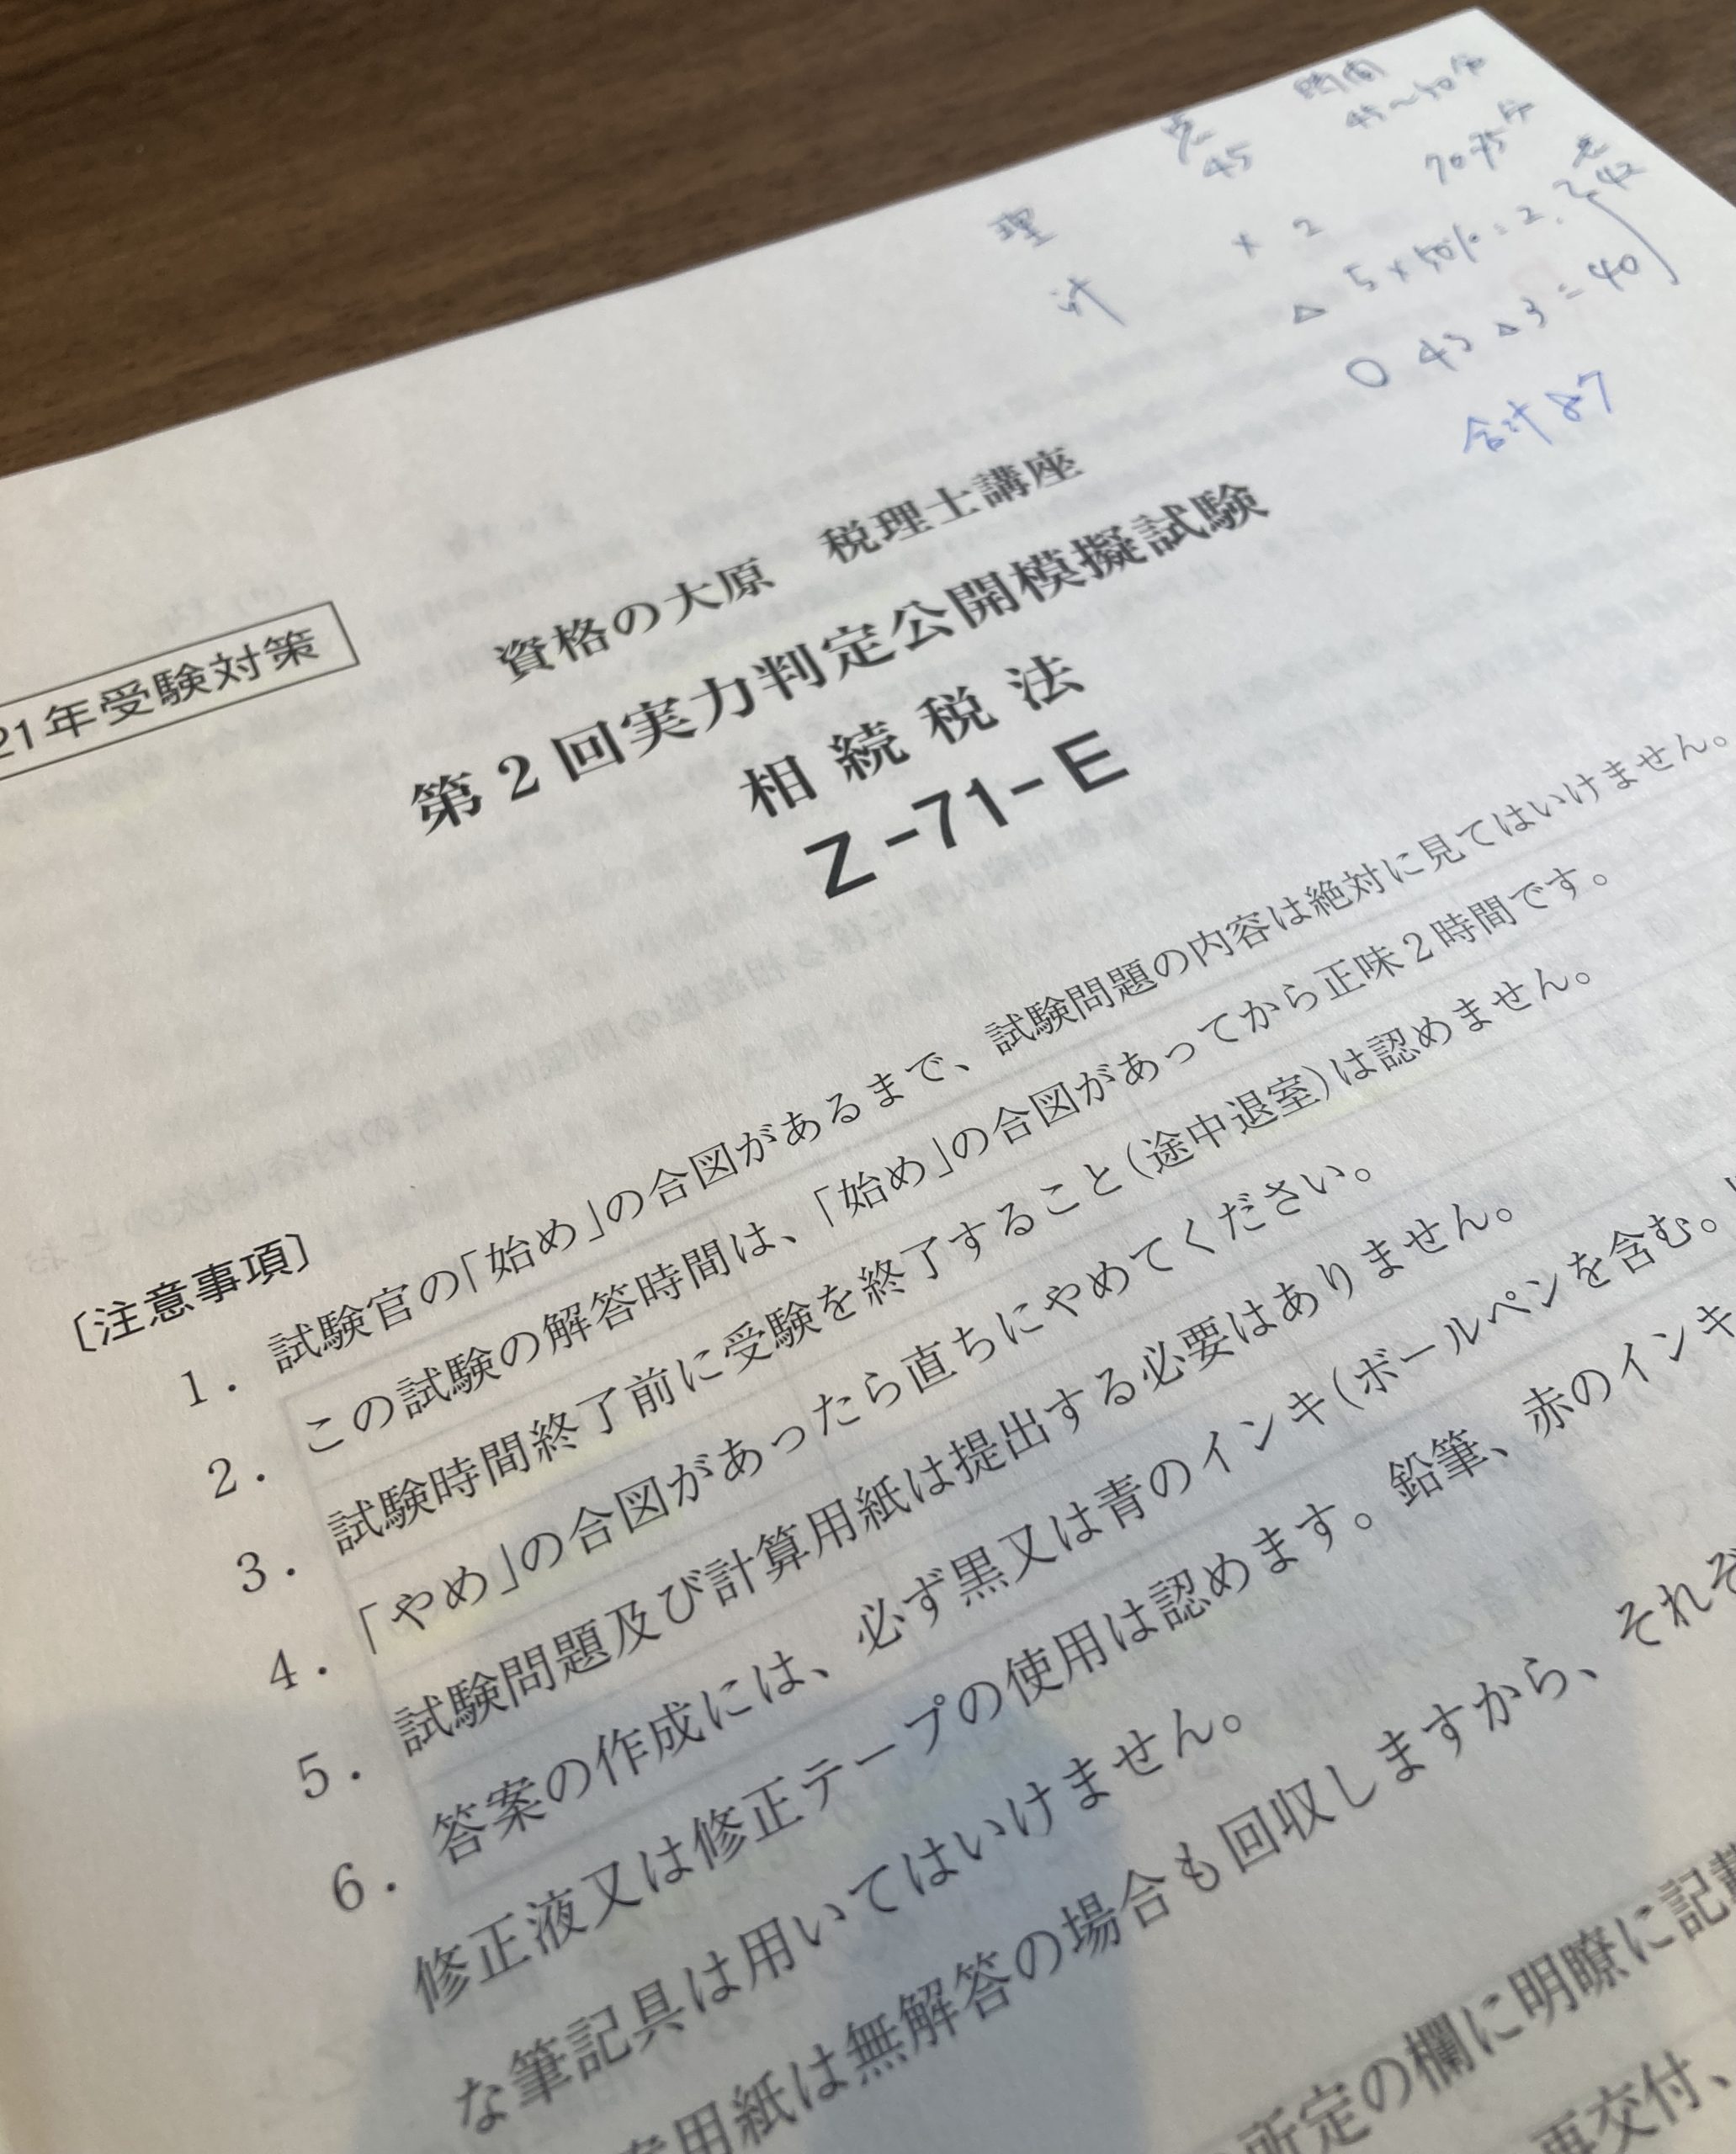 2023年 簿記論 実力判定公開模擬試験 大原 税理士試験 - 本